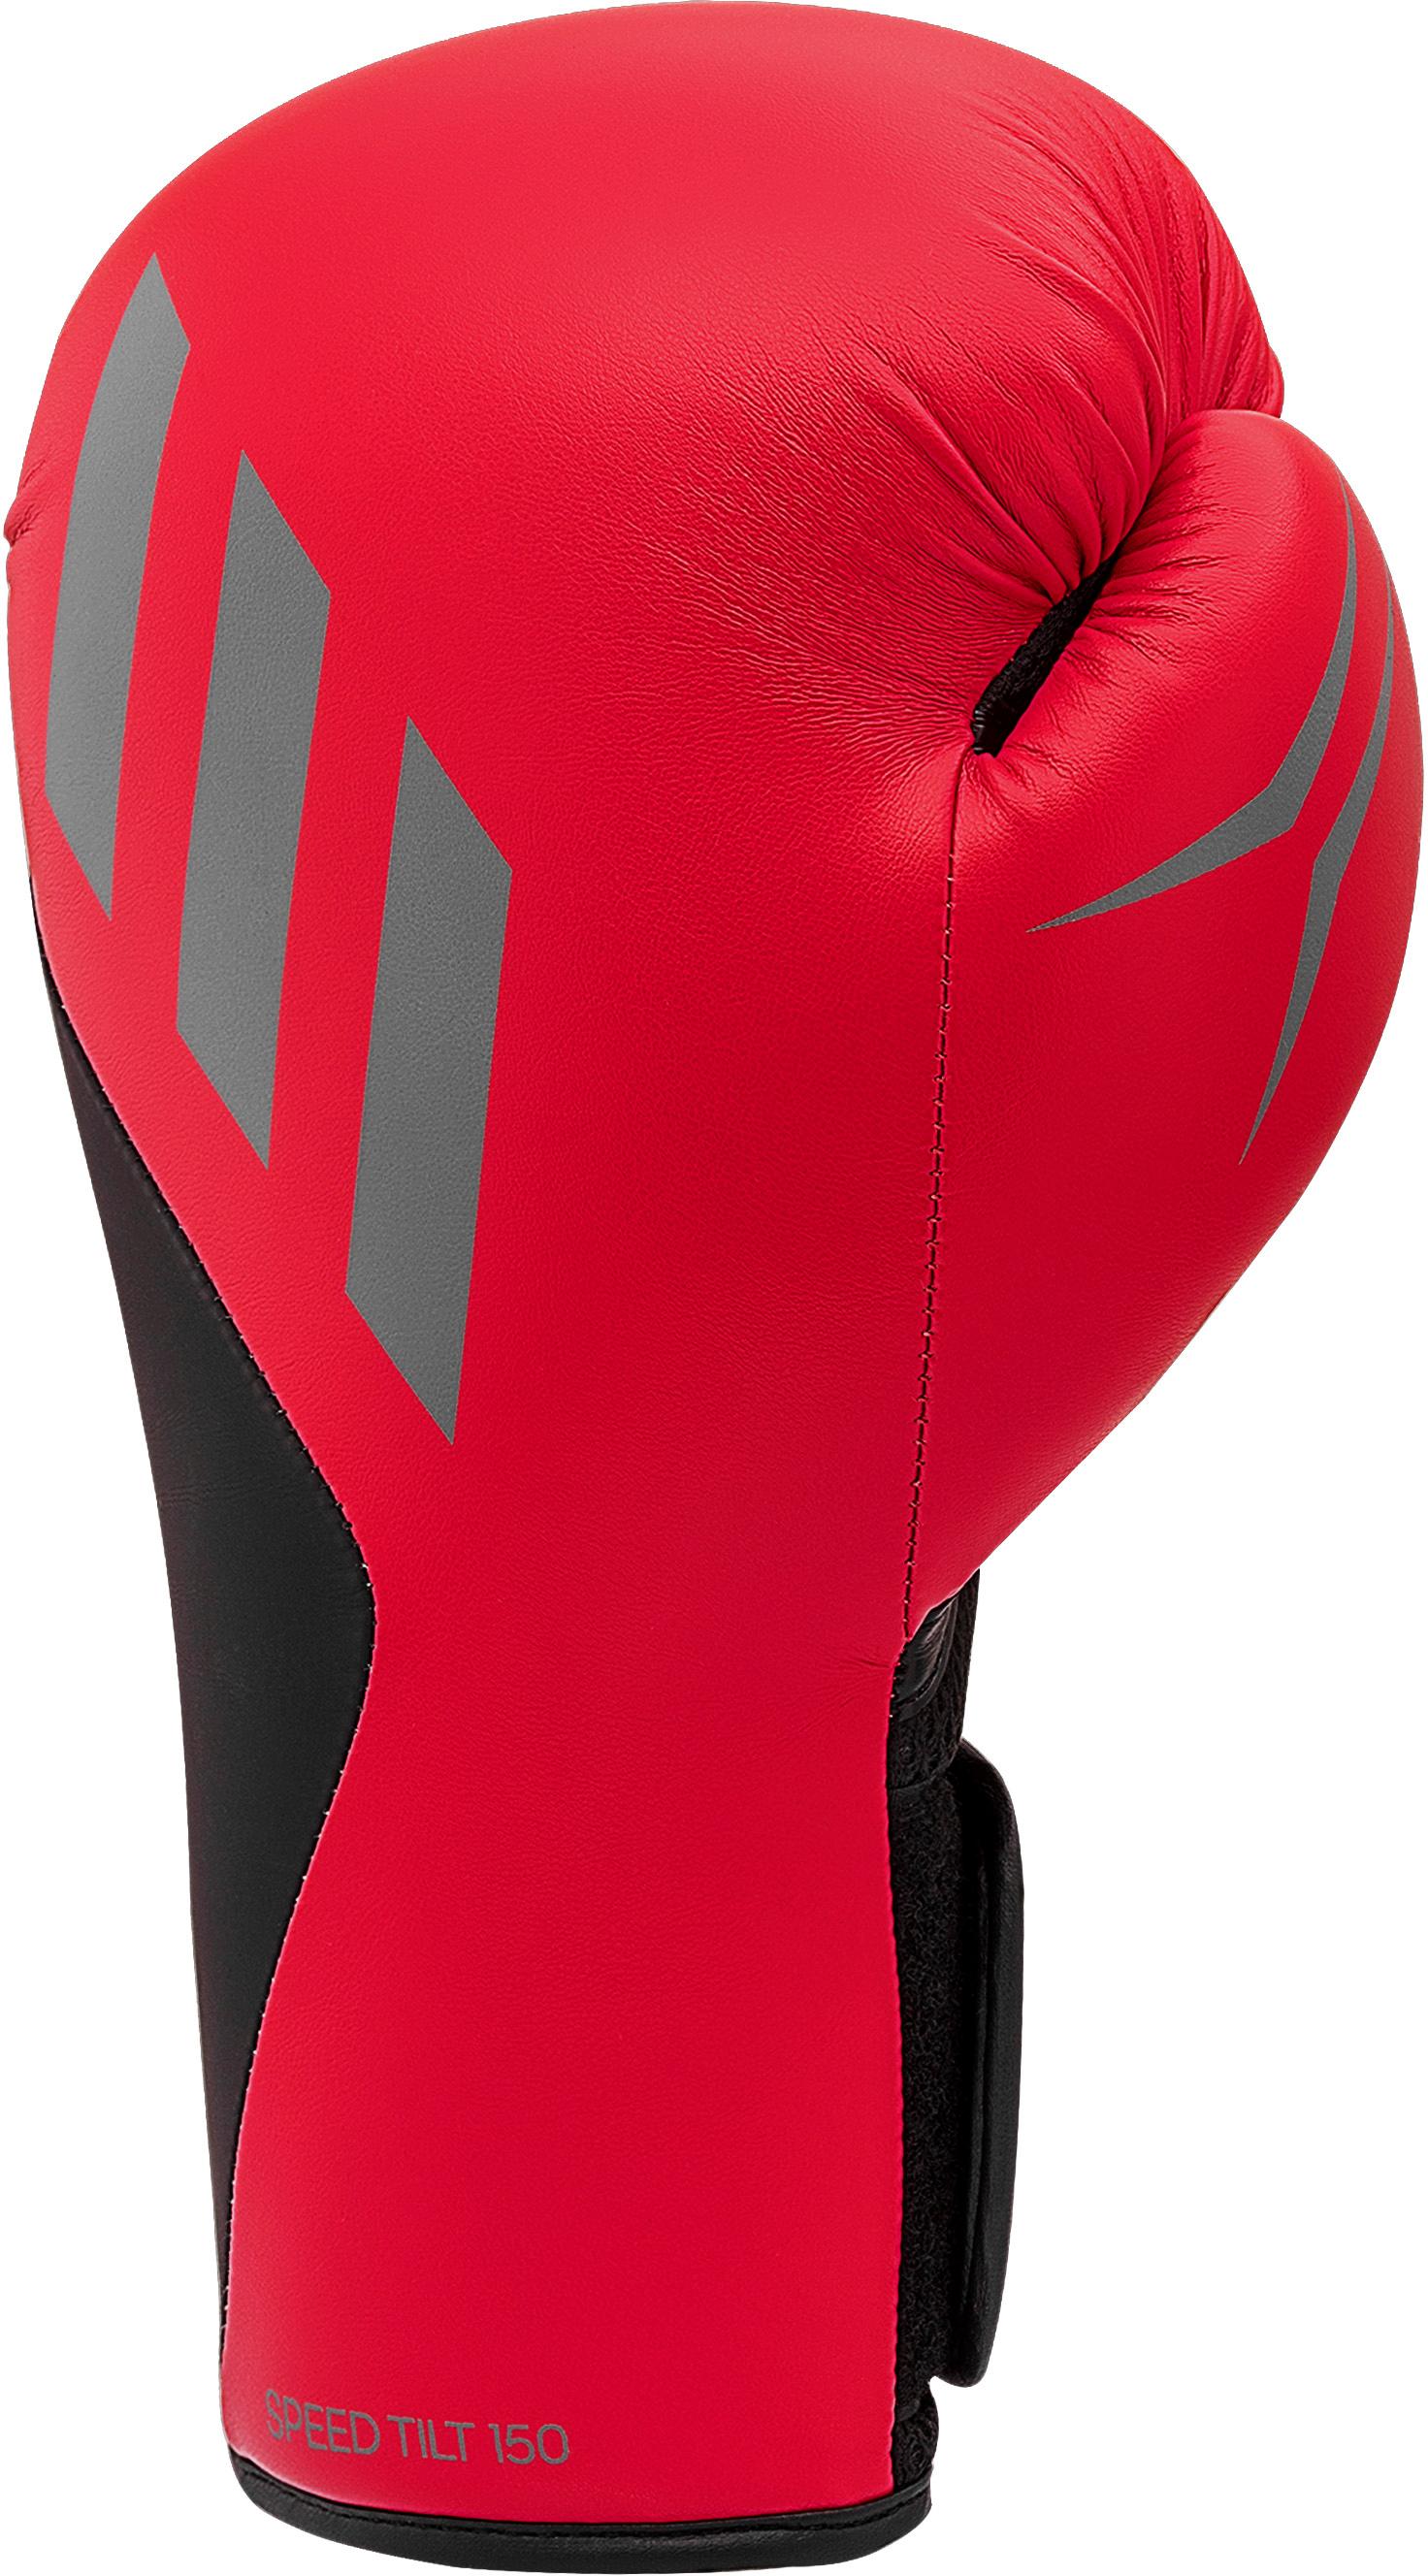 Adidas Speed Tilt 150 Boxhandschuhe kaufen Online von SportScheck Herren Shop im rot-schwarz